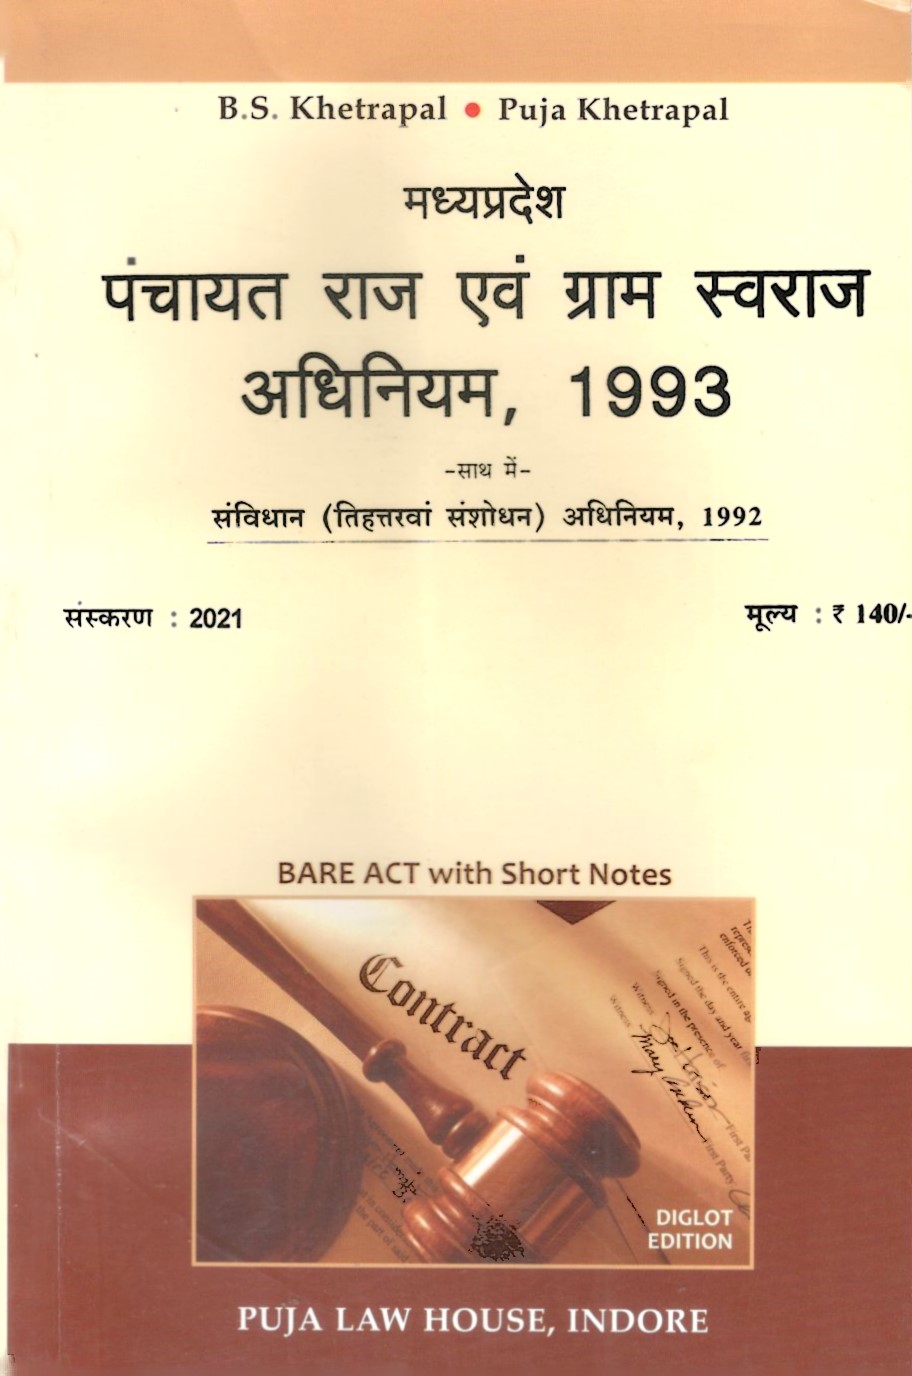  Buy मध्य प्रदेश पंचायत राज एवं ग्राम स्वराज अधिनियम, 1993 / M.P. Panchayat Raj Avam Gram Swaraj Adhiniyam, 1993